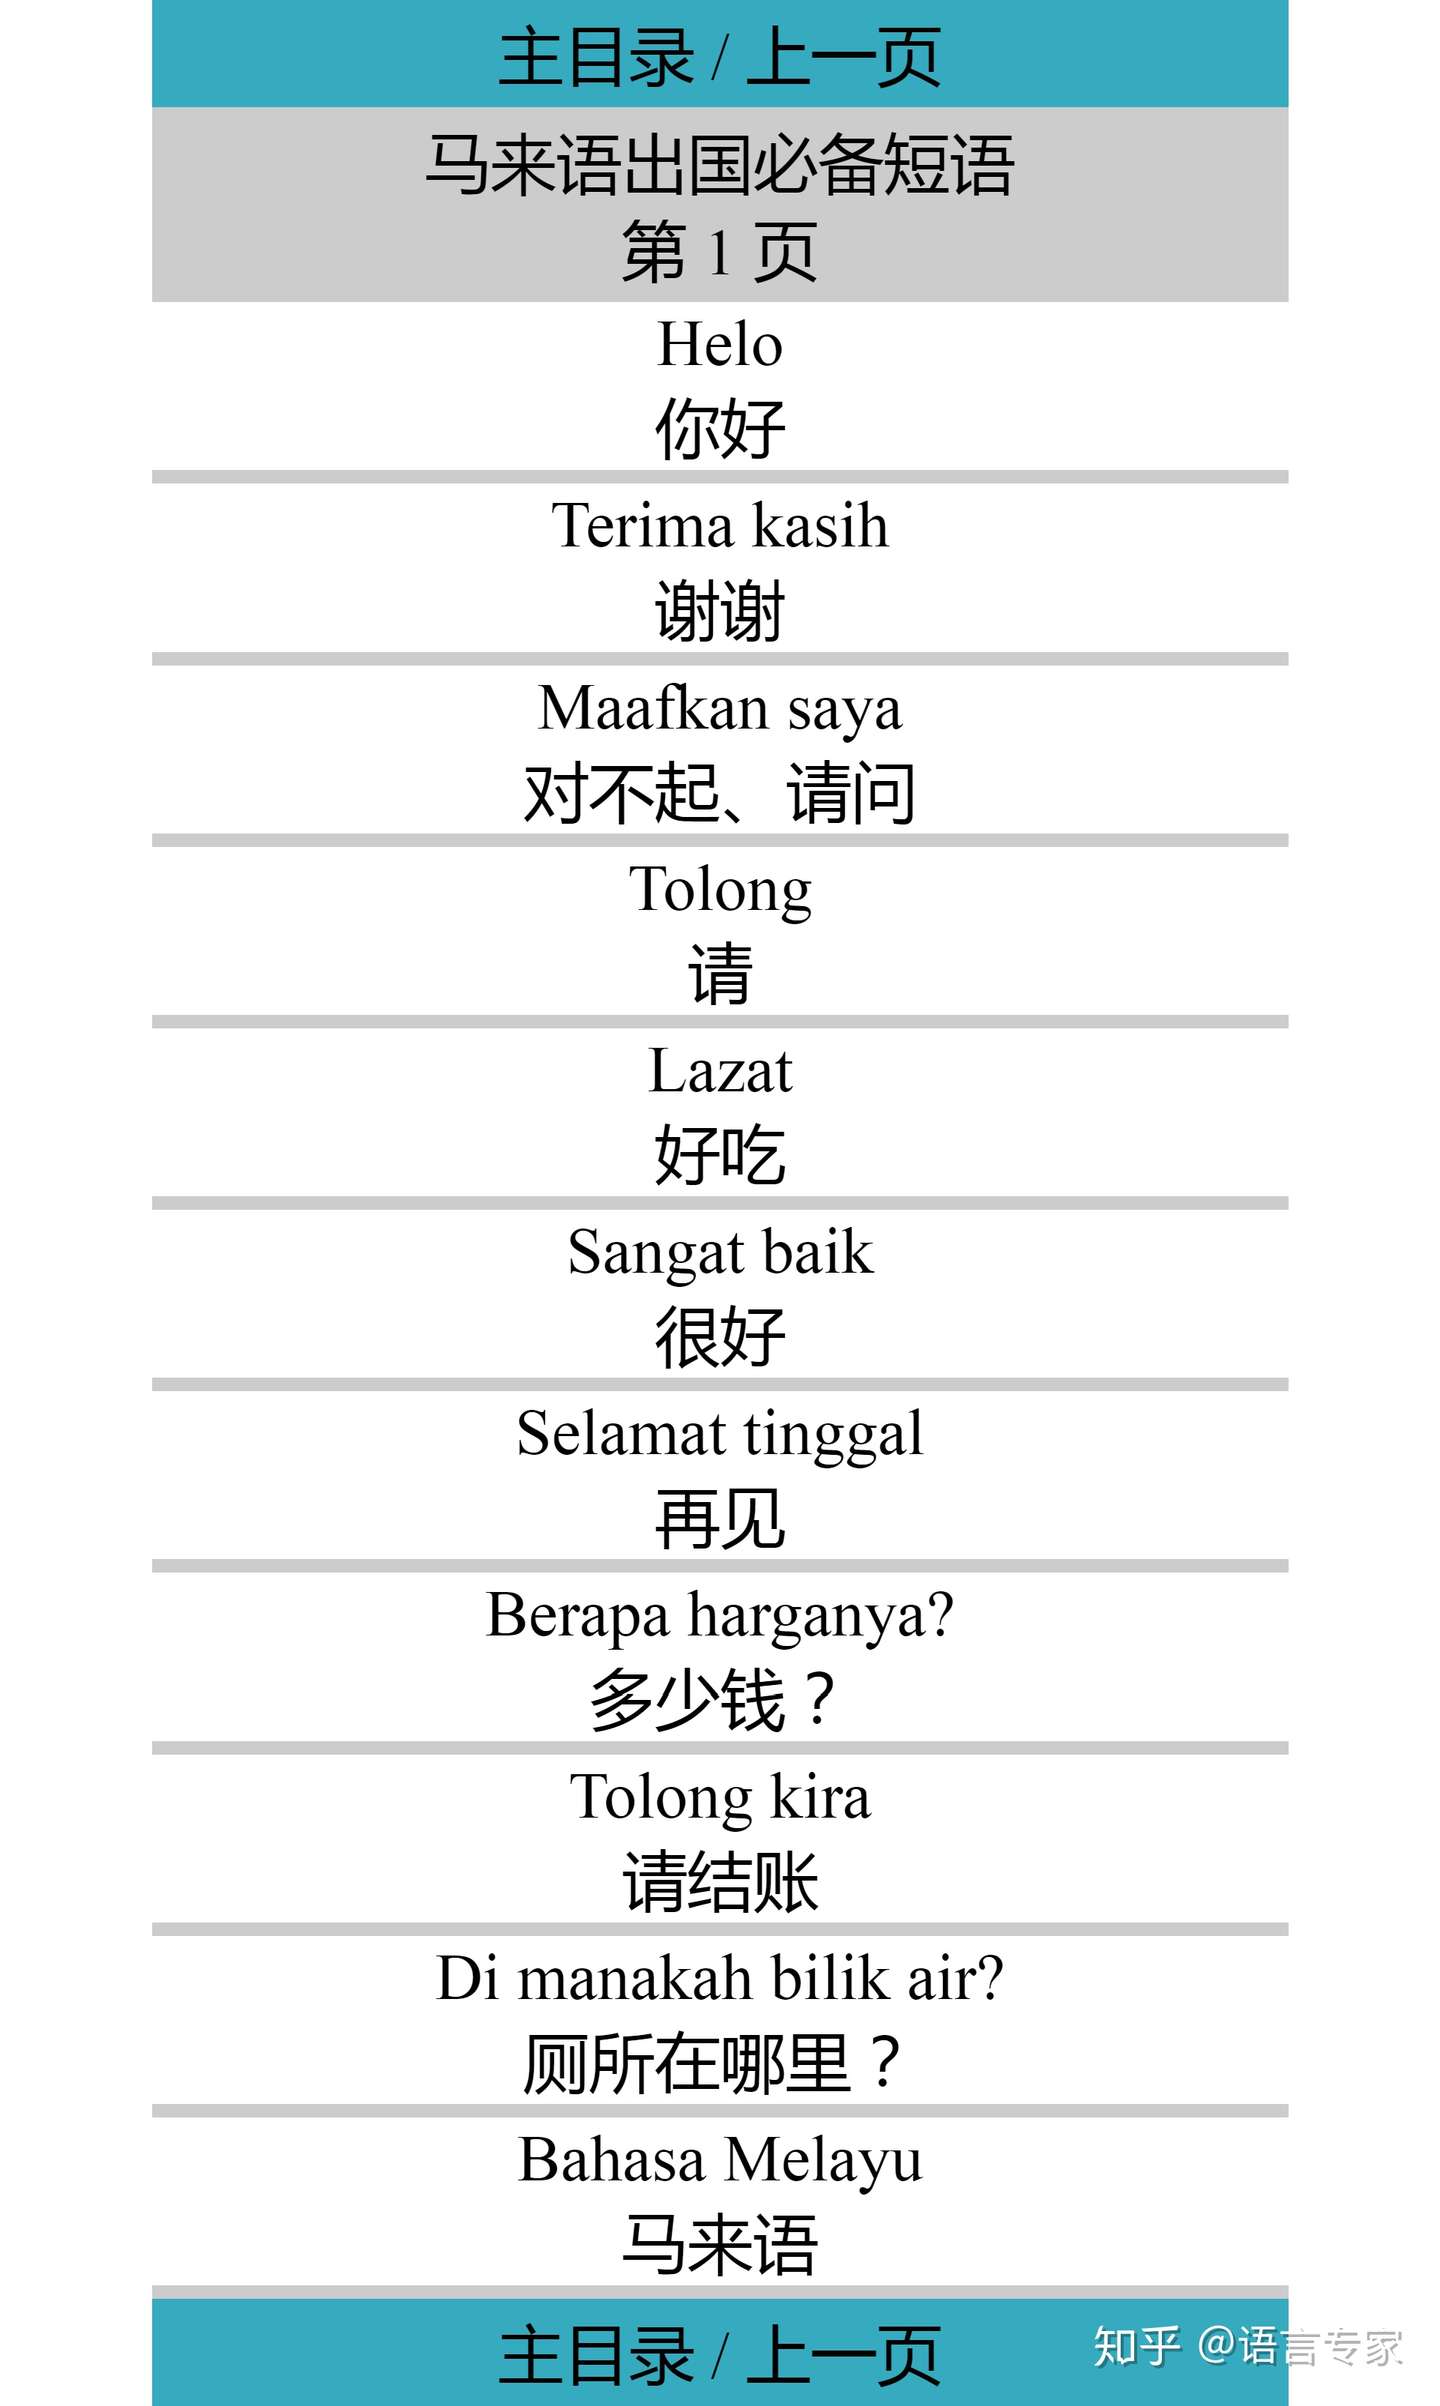 马来语在线学习 知乎